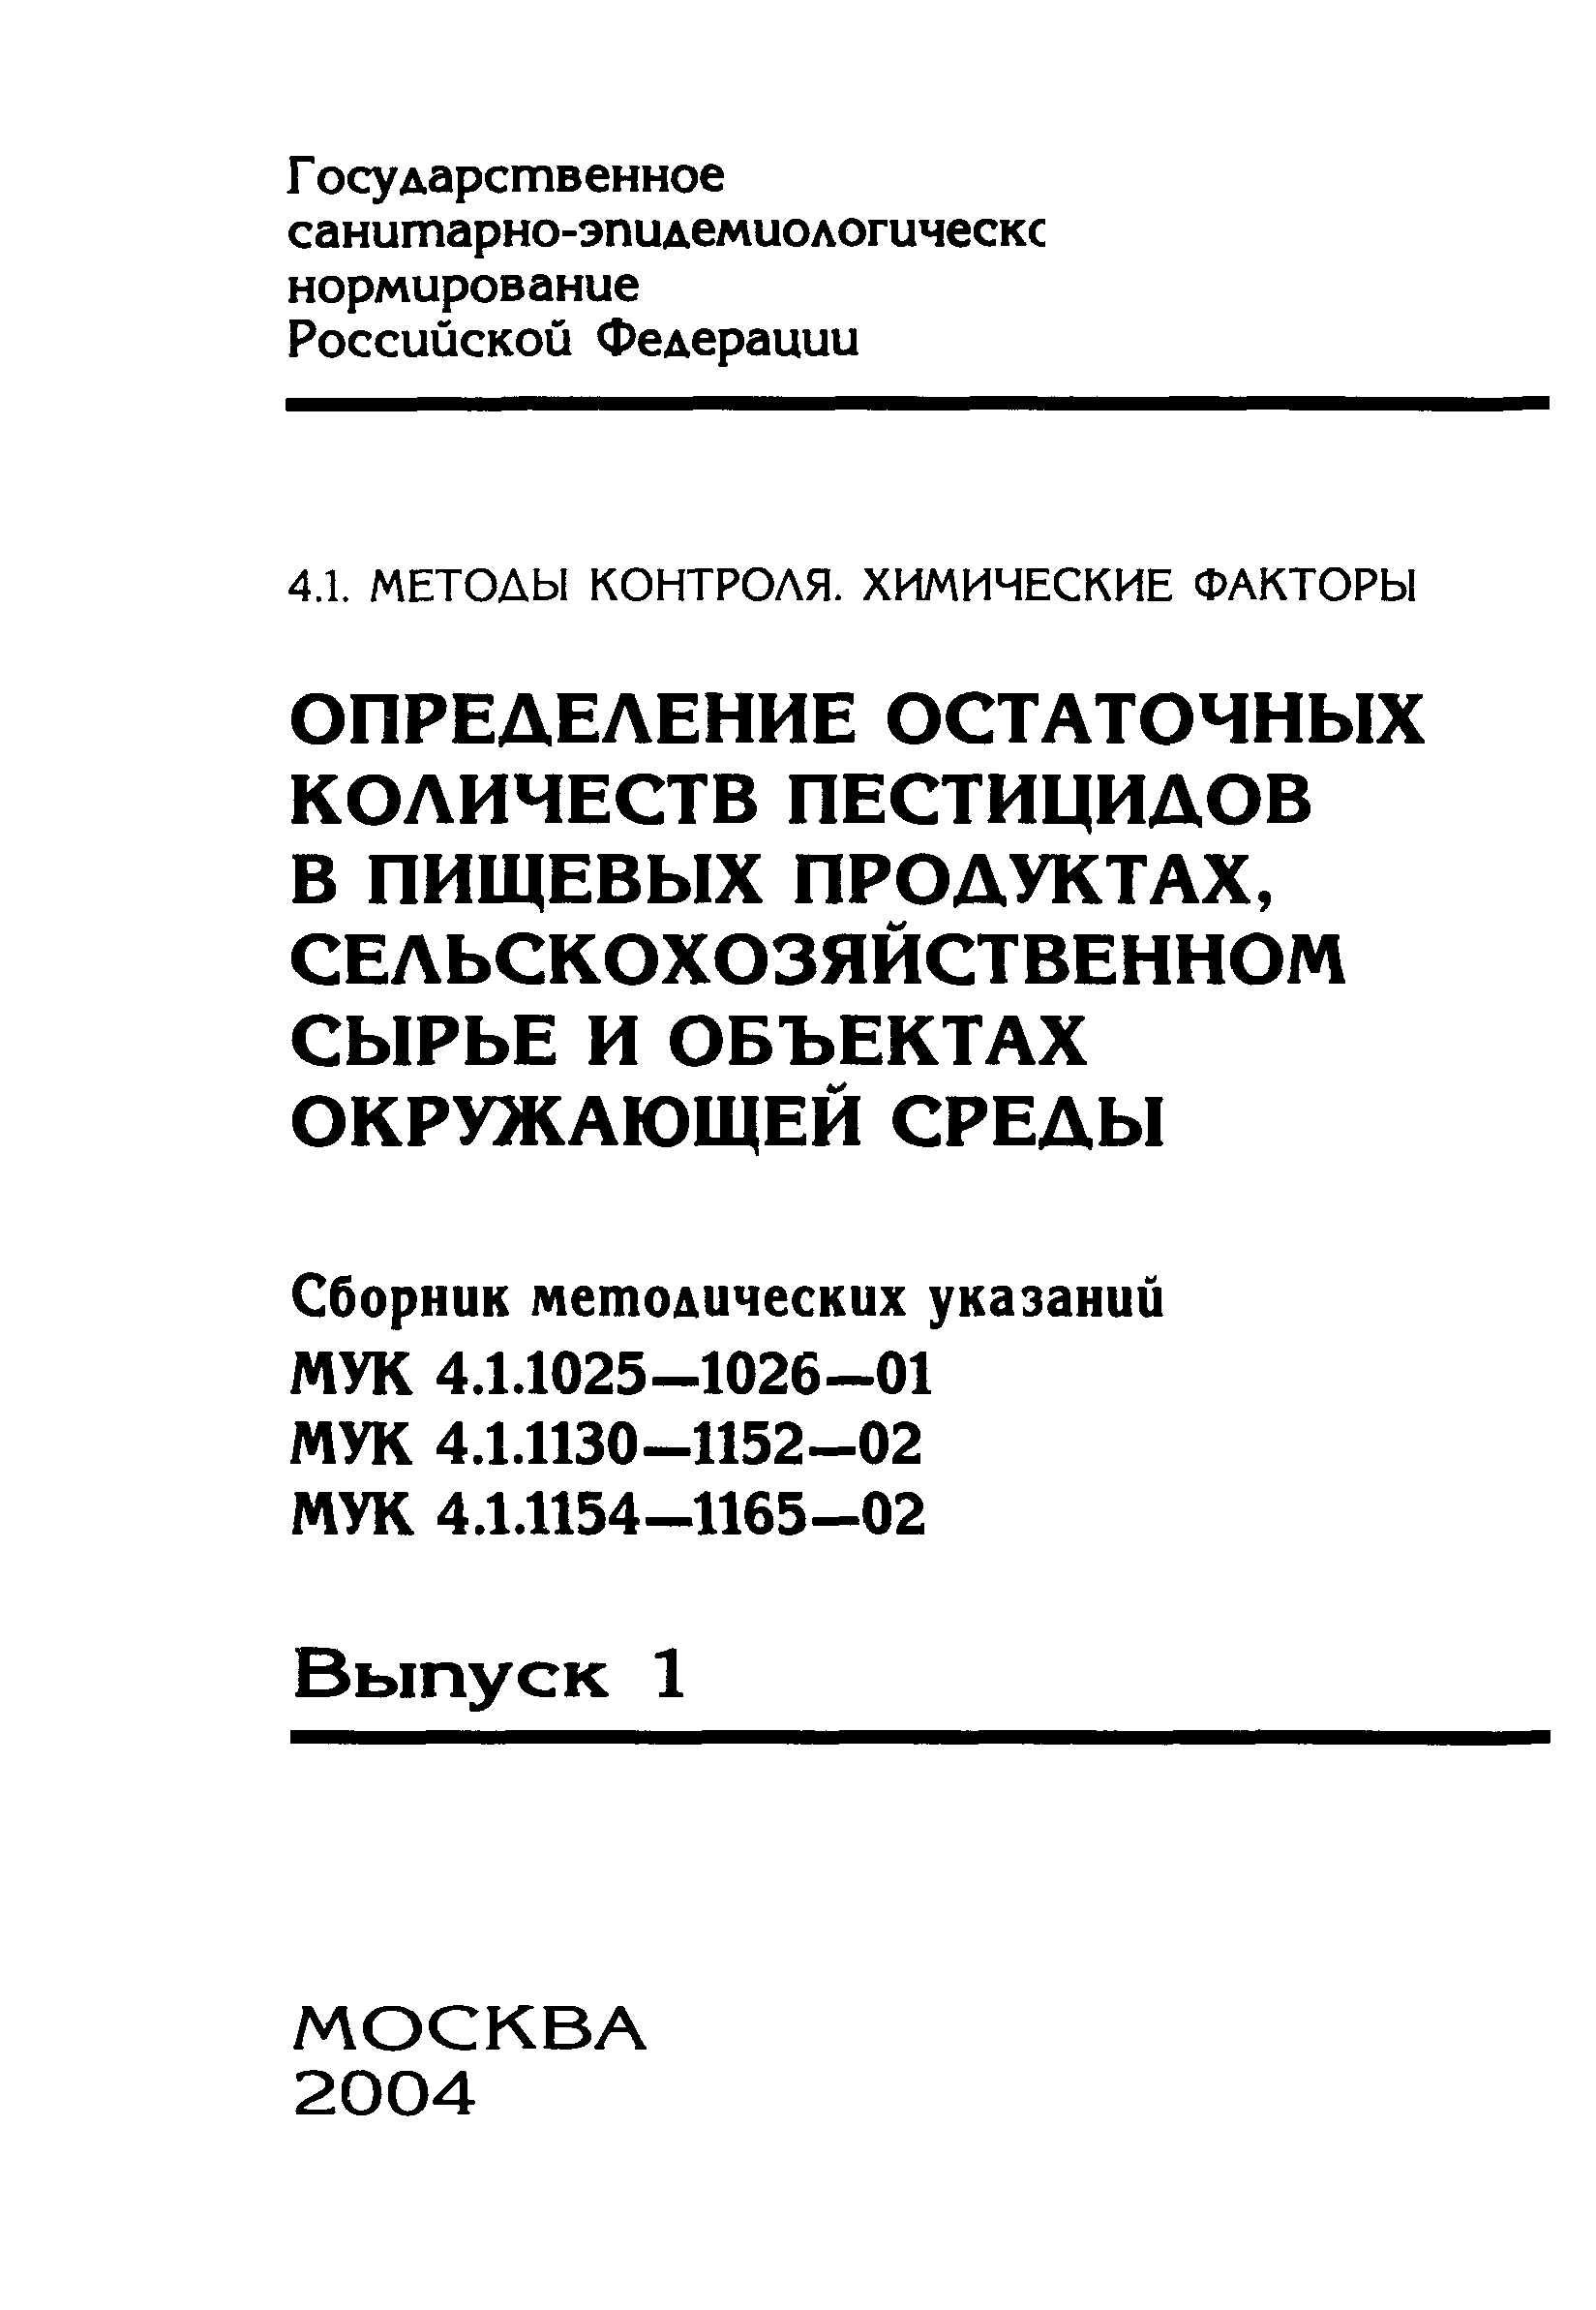 МУК 4.1.1162-02